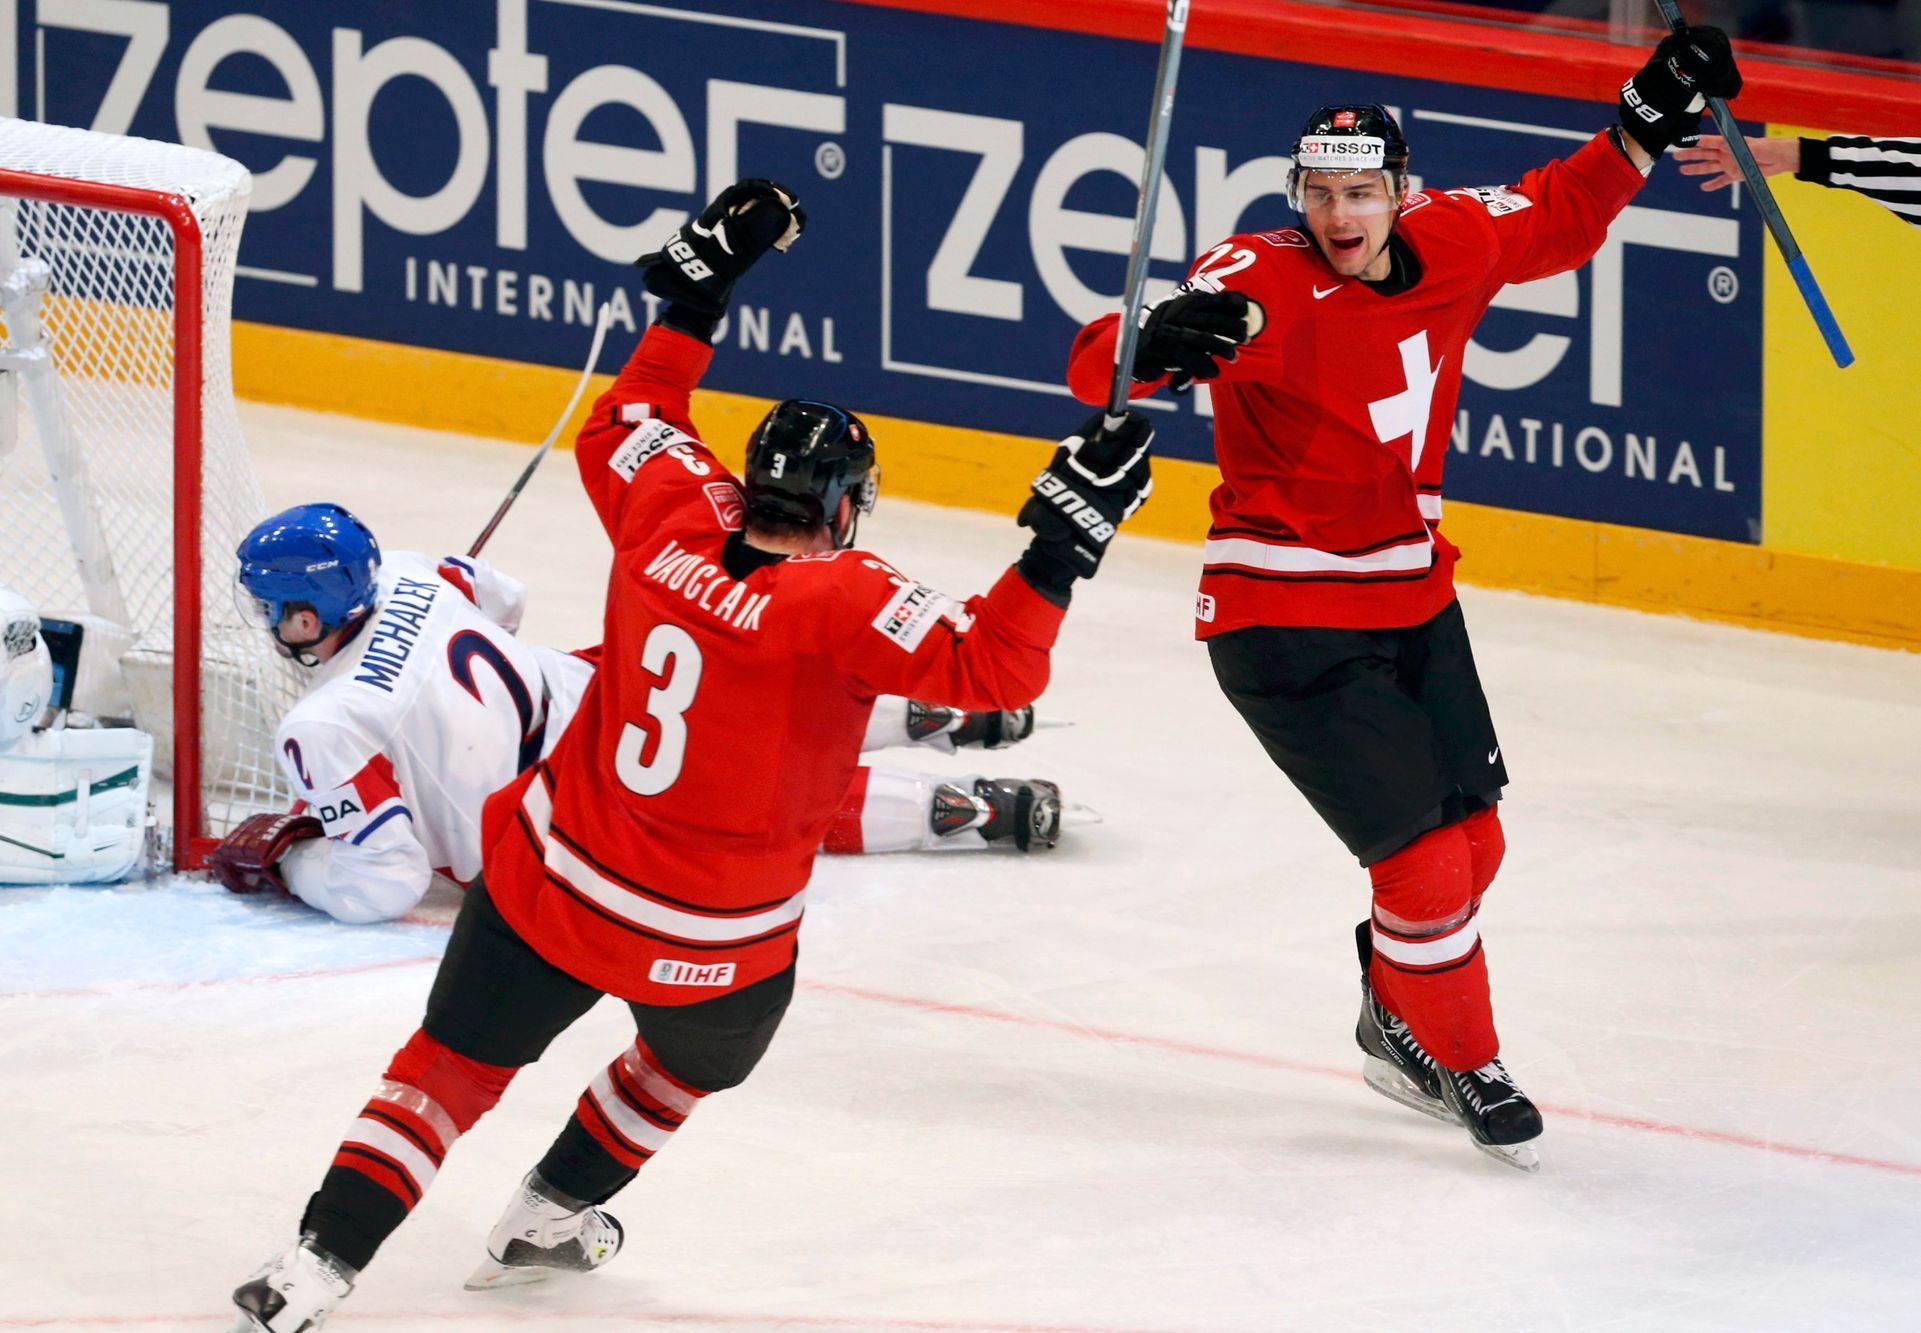 Hokej, MS 2013, Česko - Švýcarsko: Nino Niederreiter (vpravo) slaví gól na 0:2